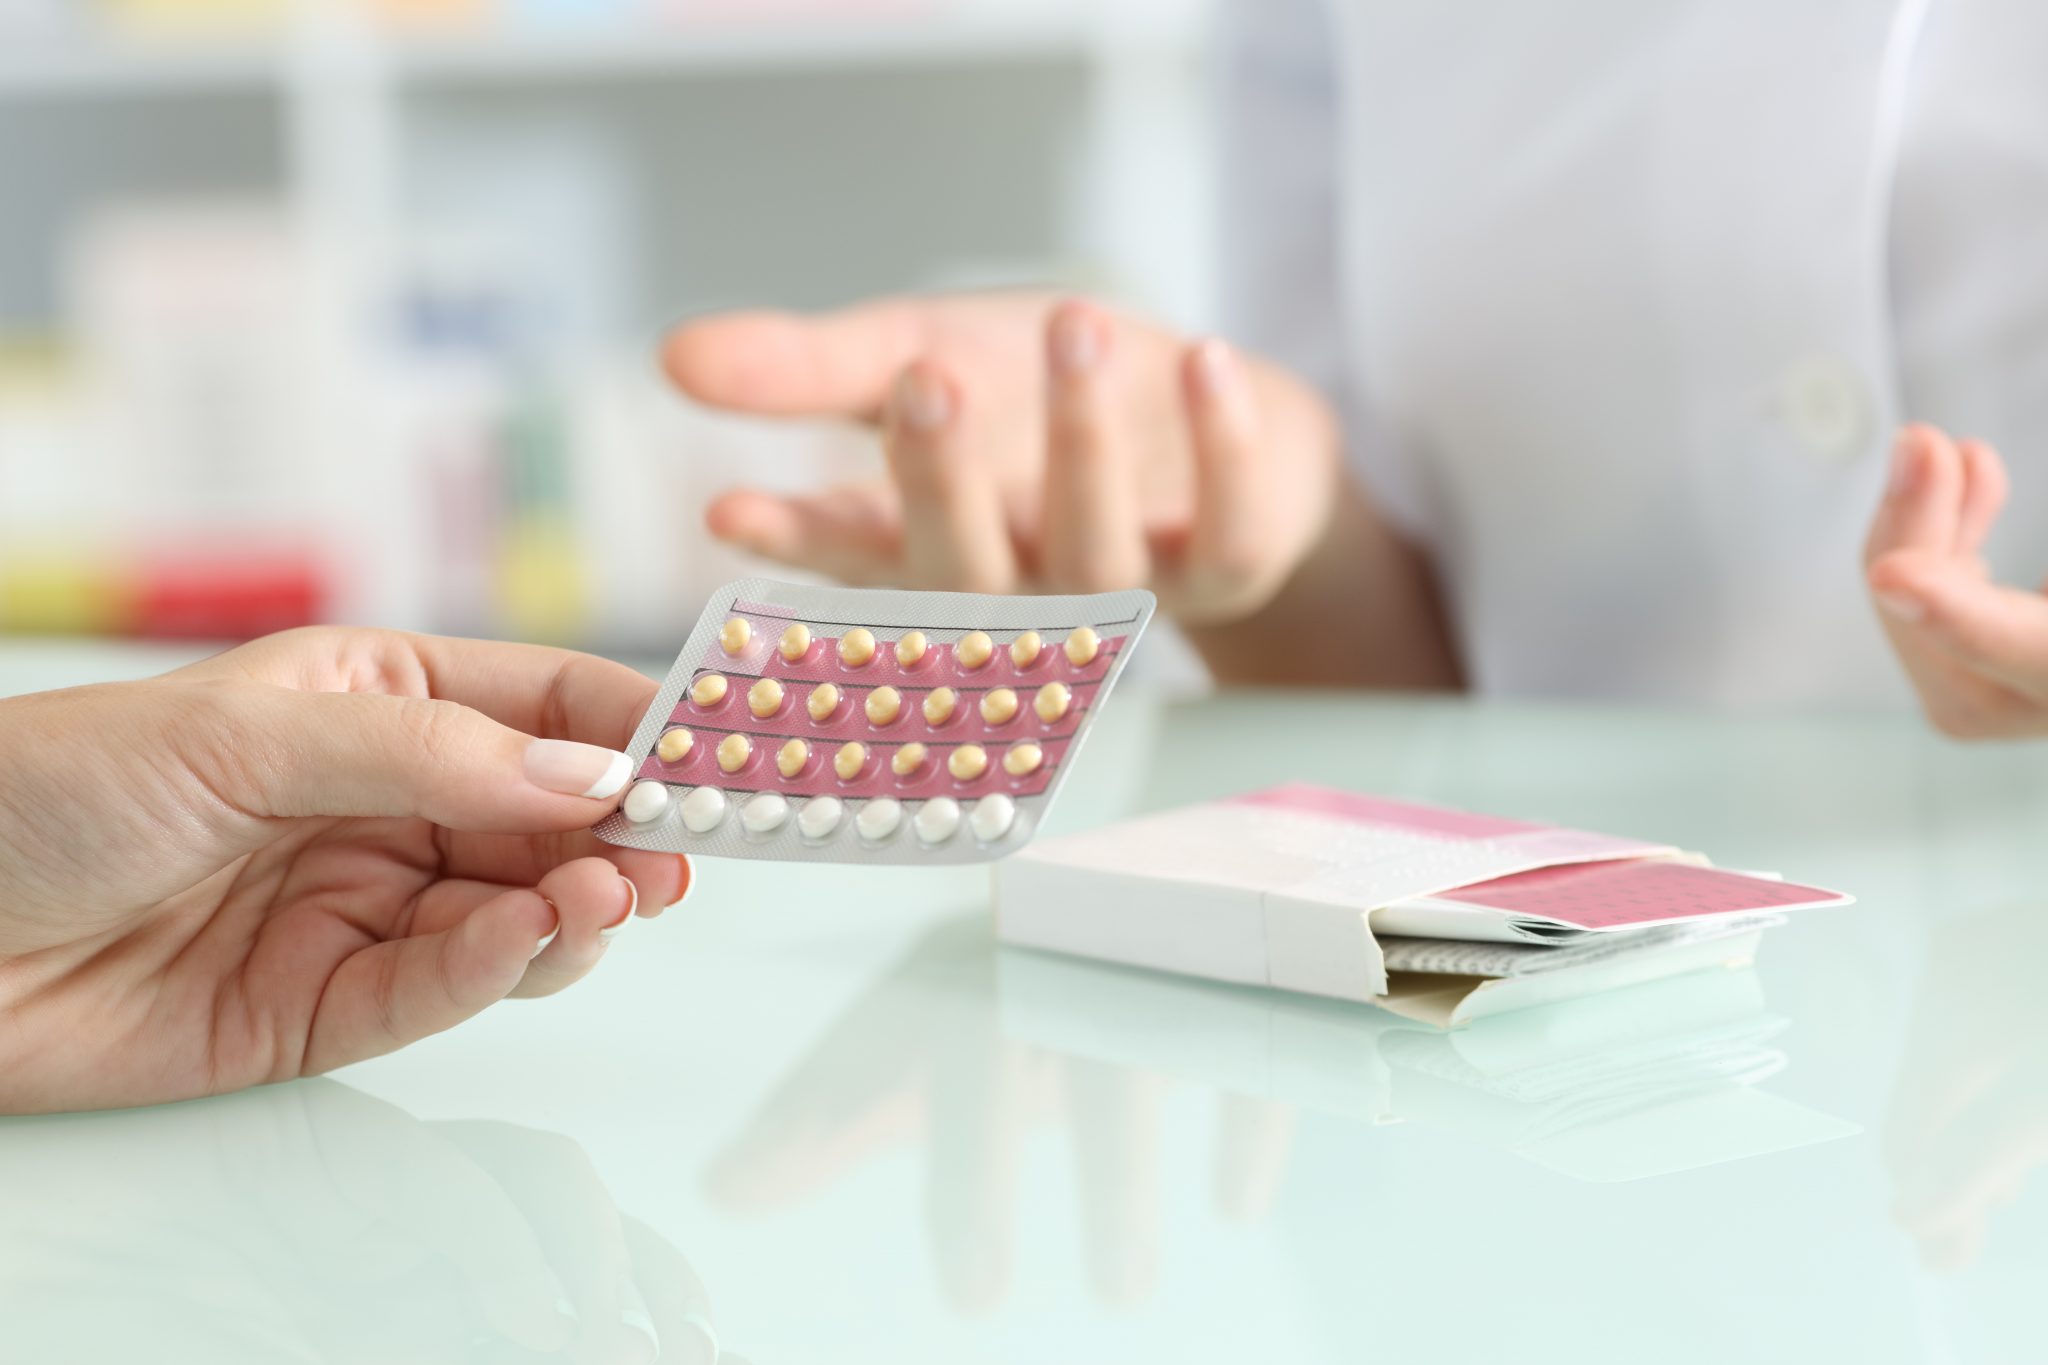 Mulheres que usam contraceptivo desenvolvem comorbidades